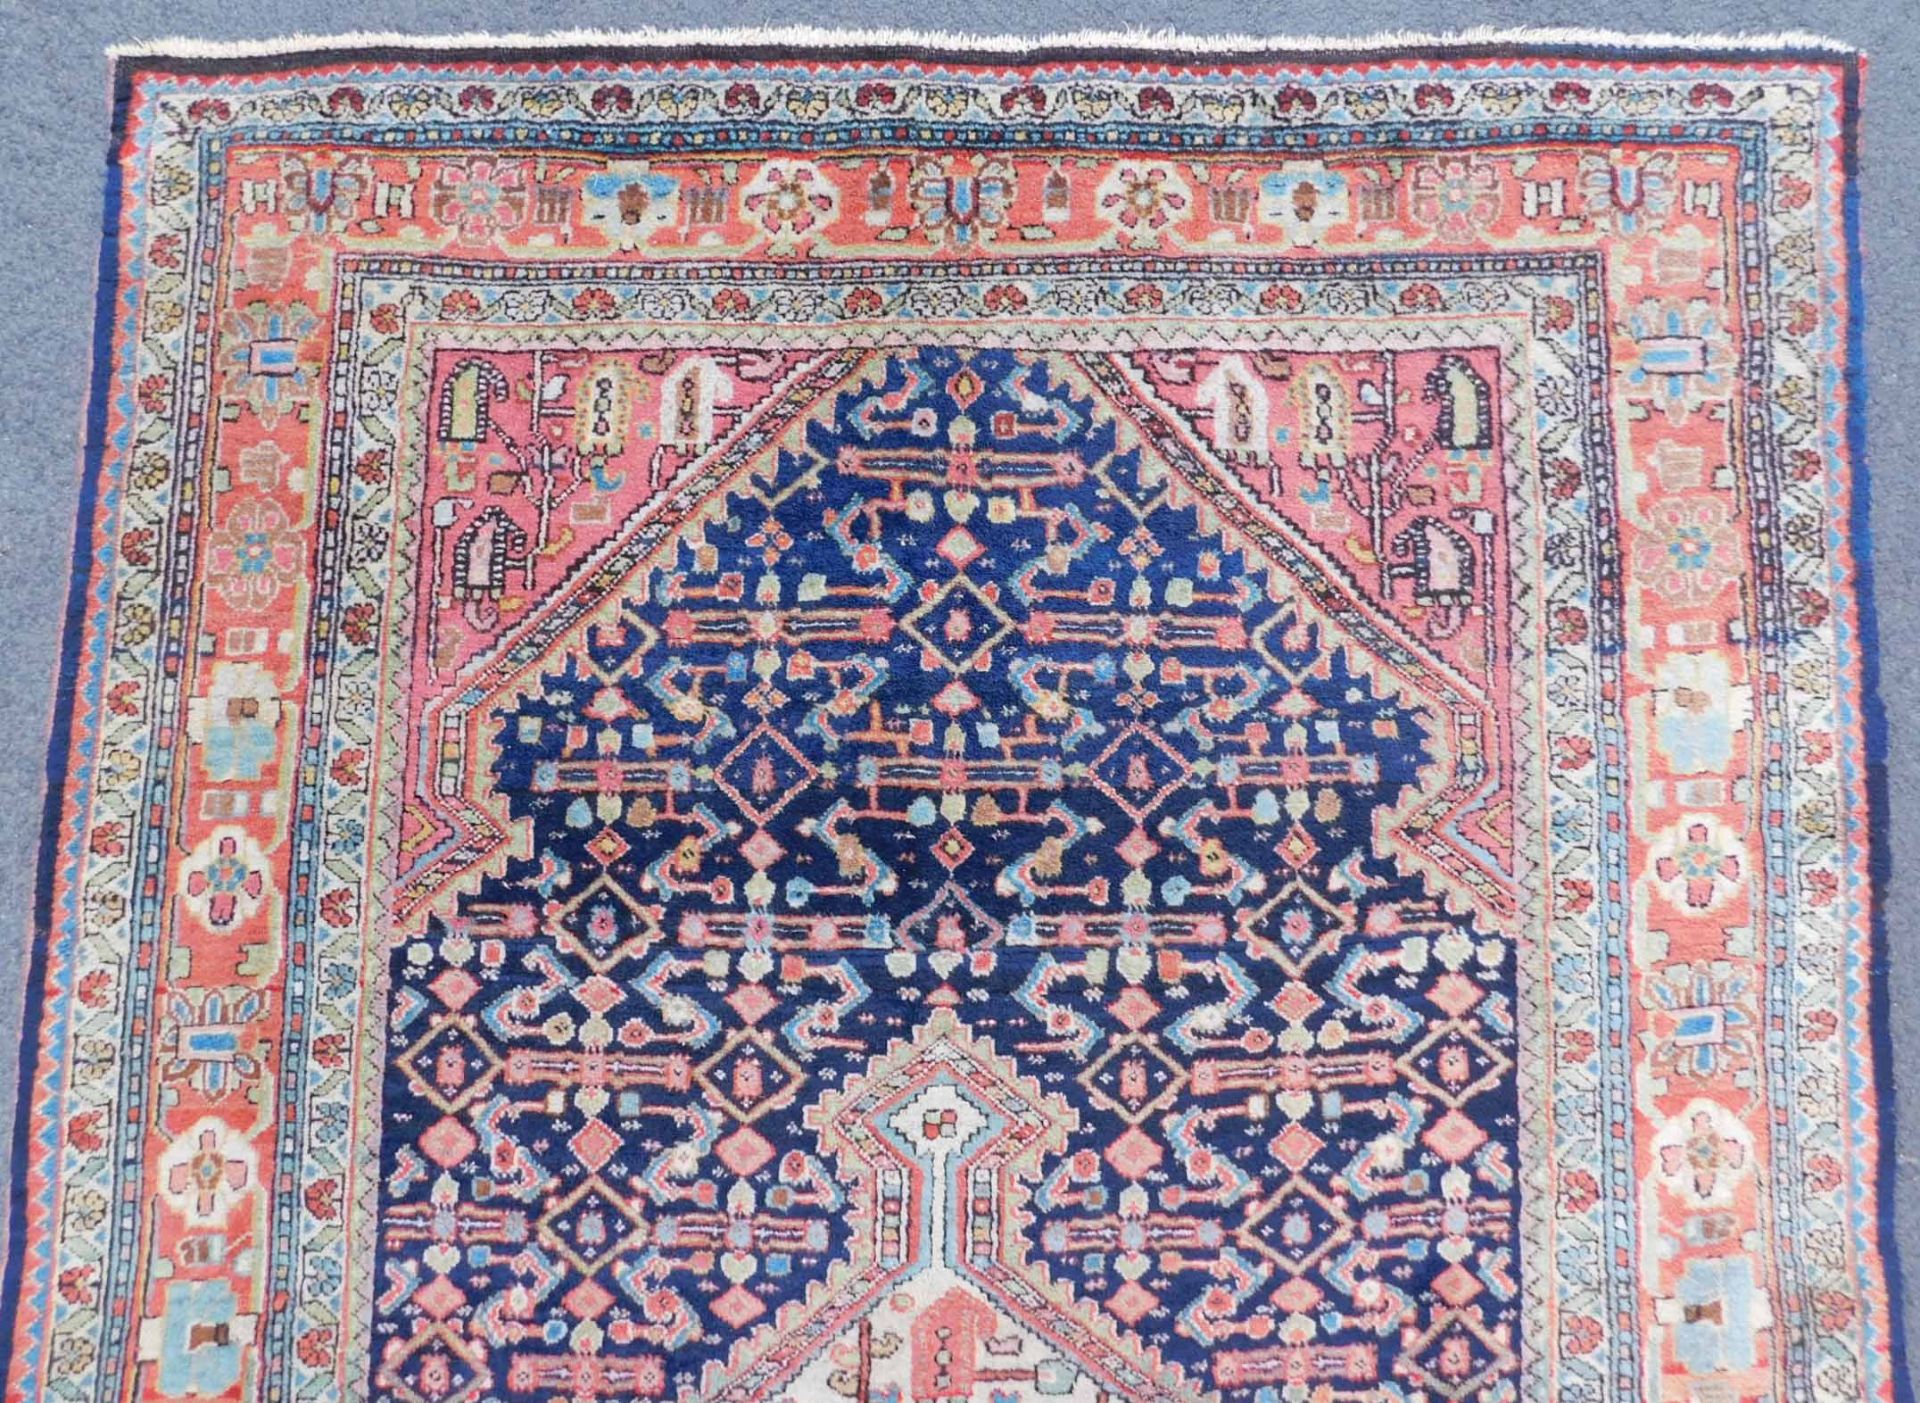 Saruk Jozan Persian carpet. Iran. Antique, around 100-130 years old. - Image 4 of 6